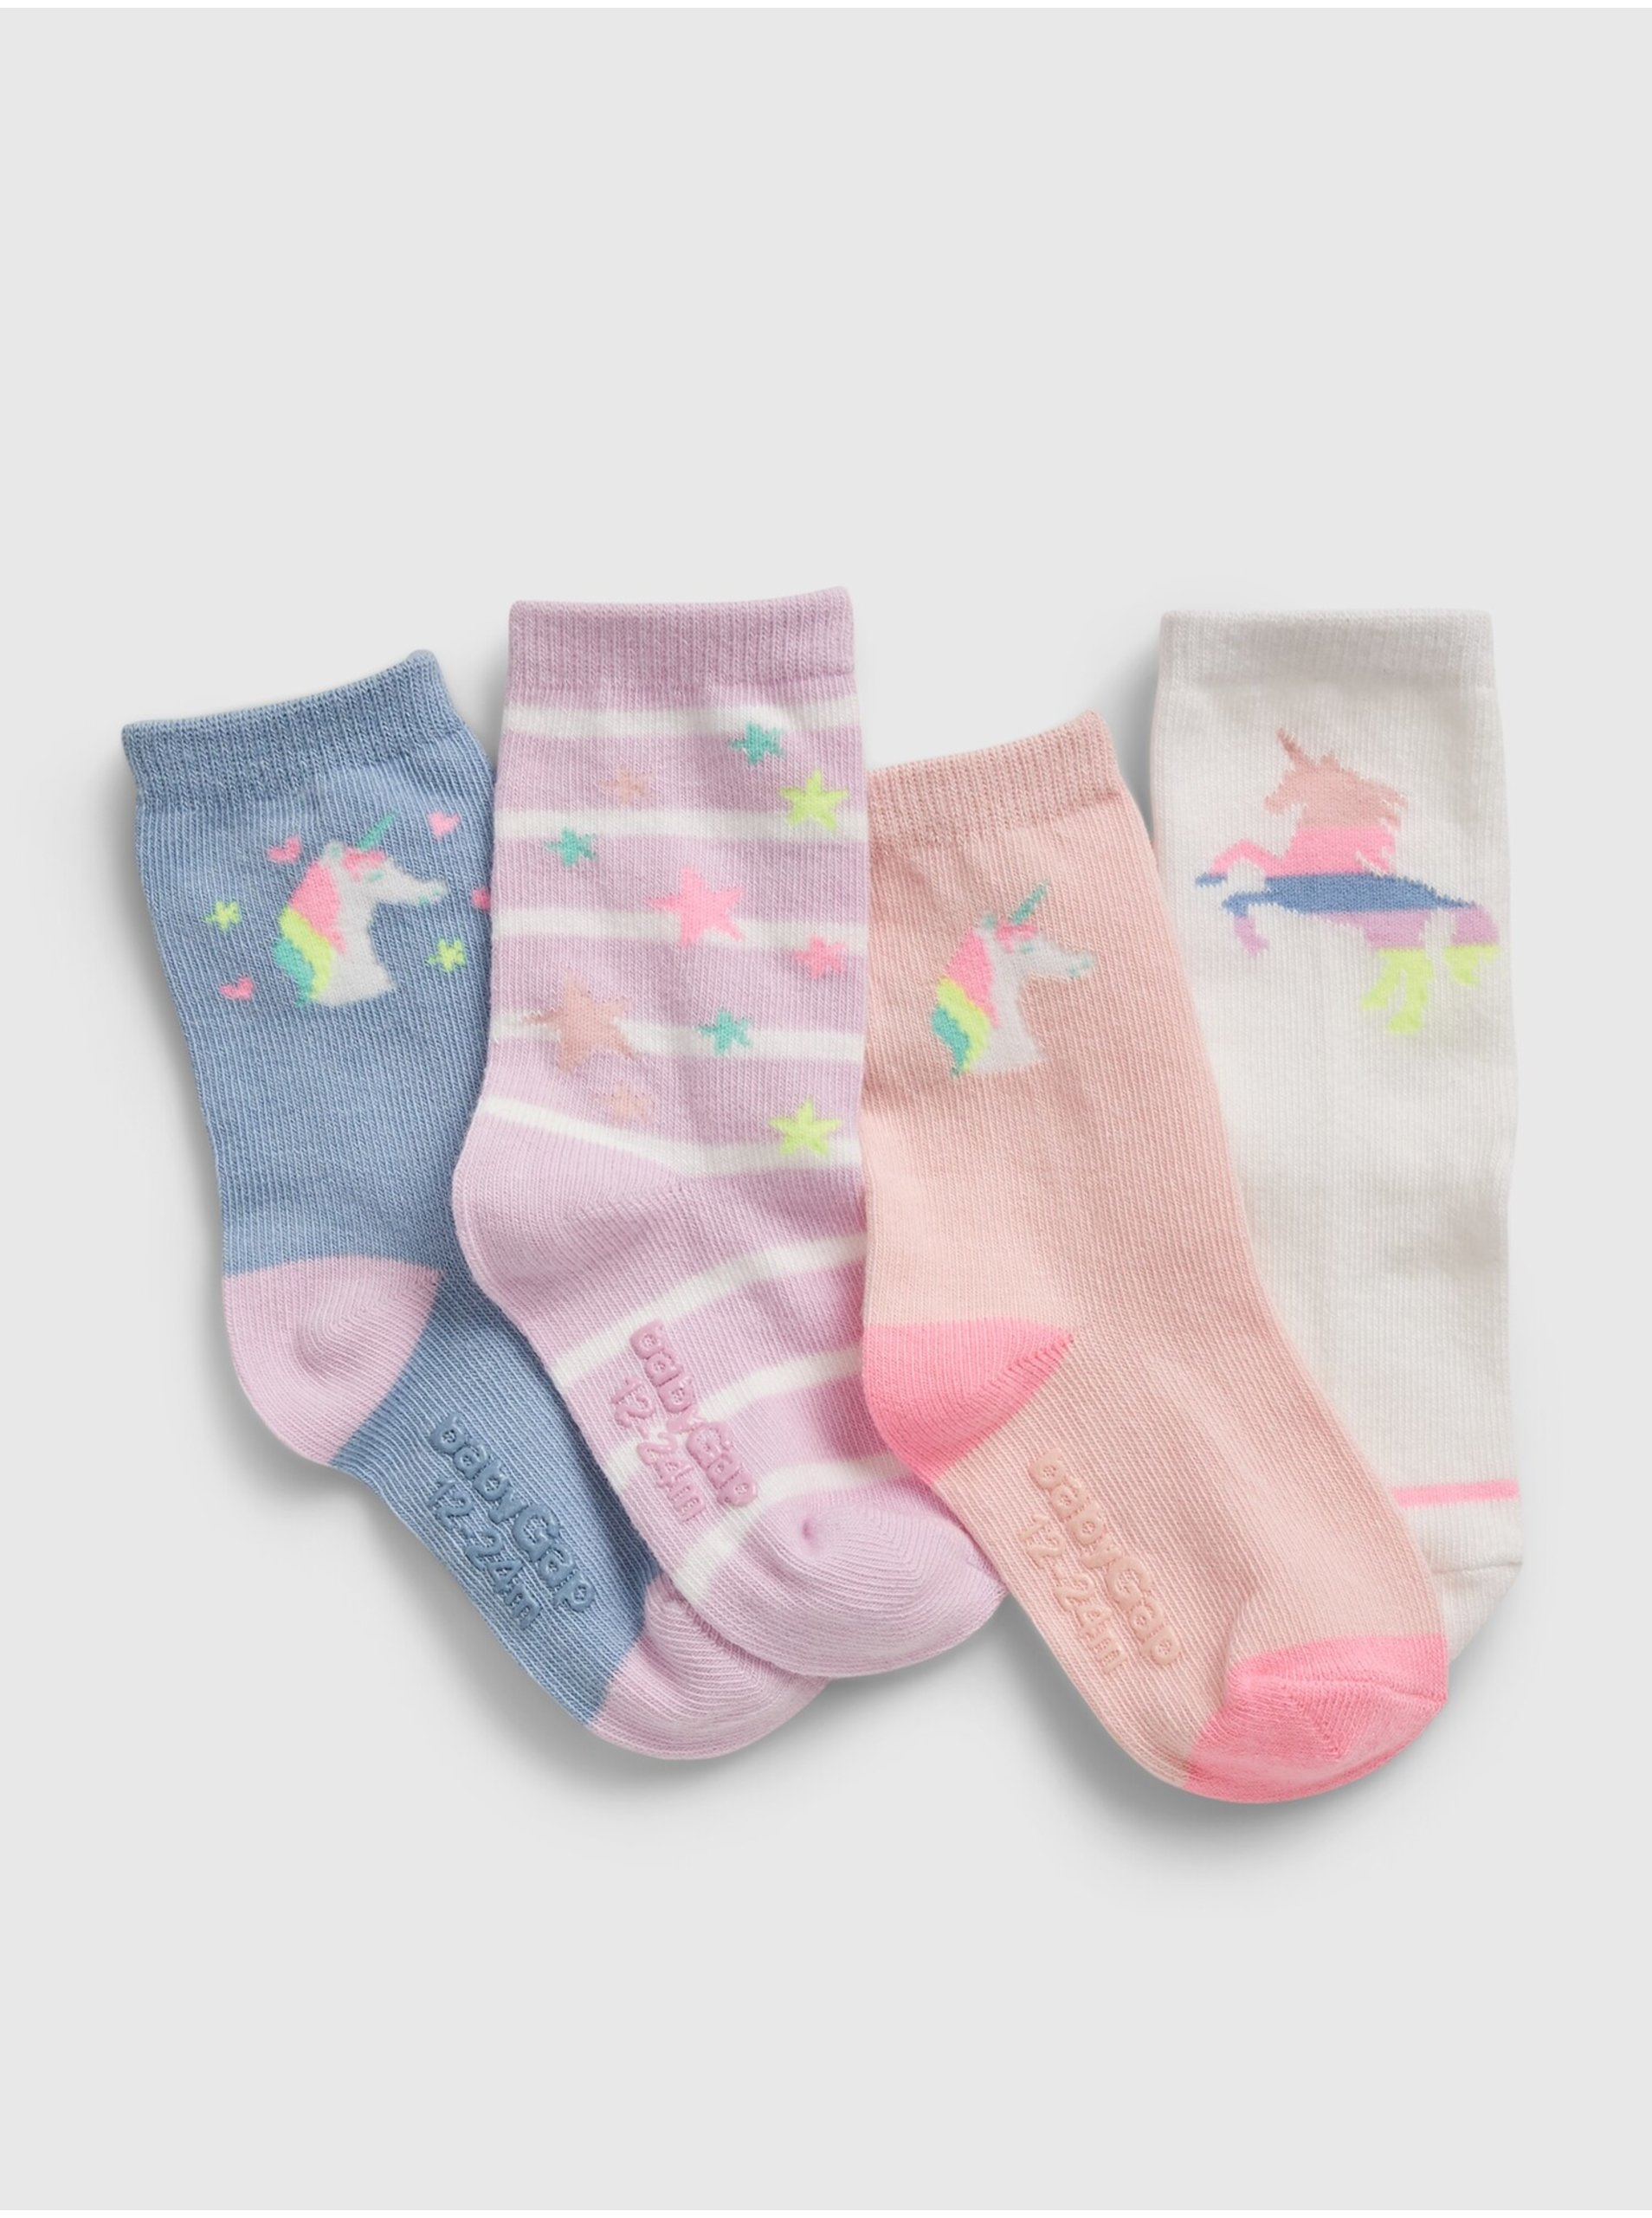 Lacno Detské ponožky unicorn socks, 4 páry Farebná